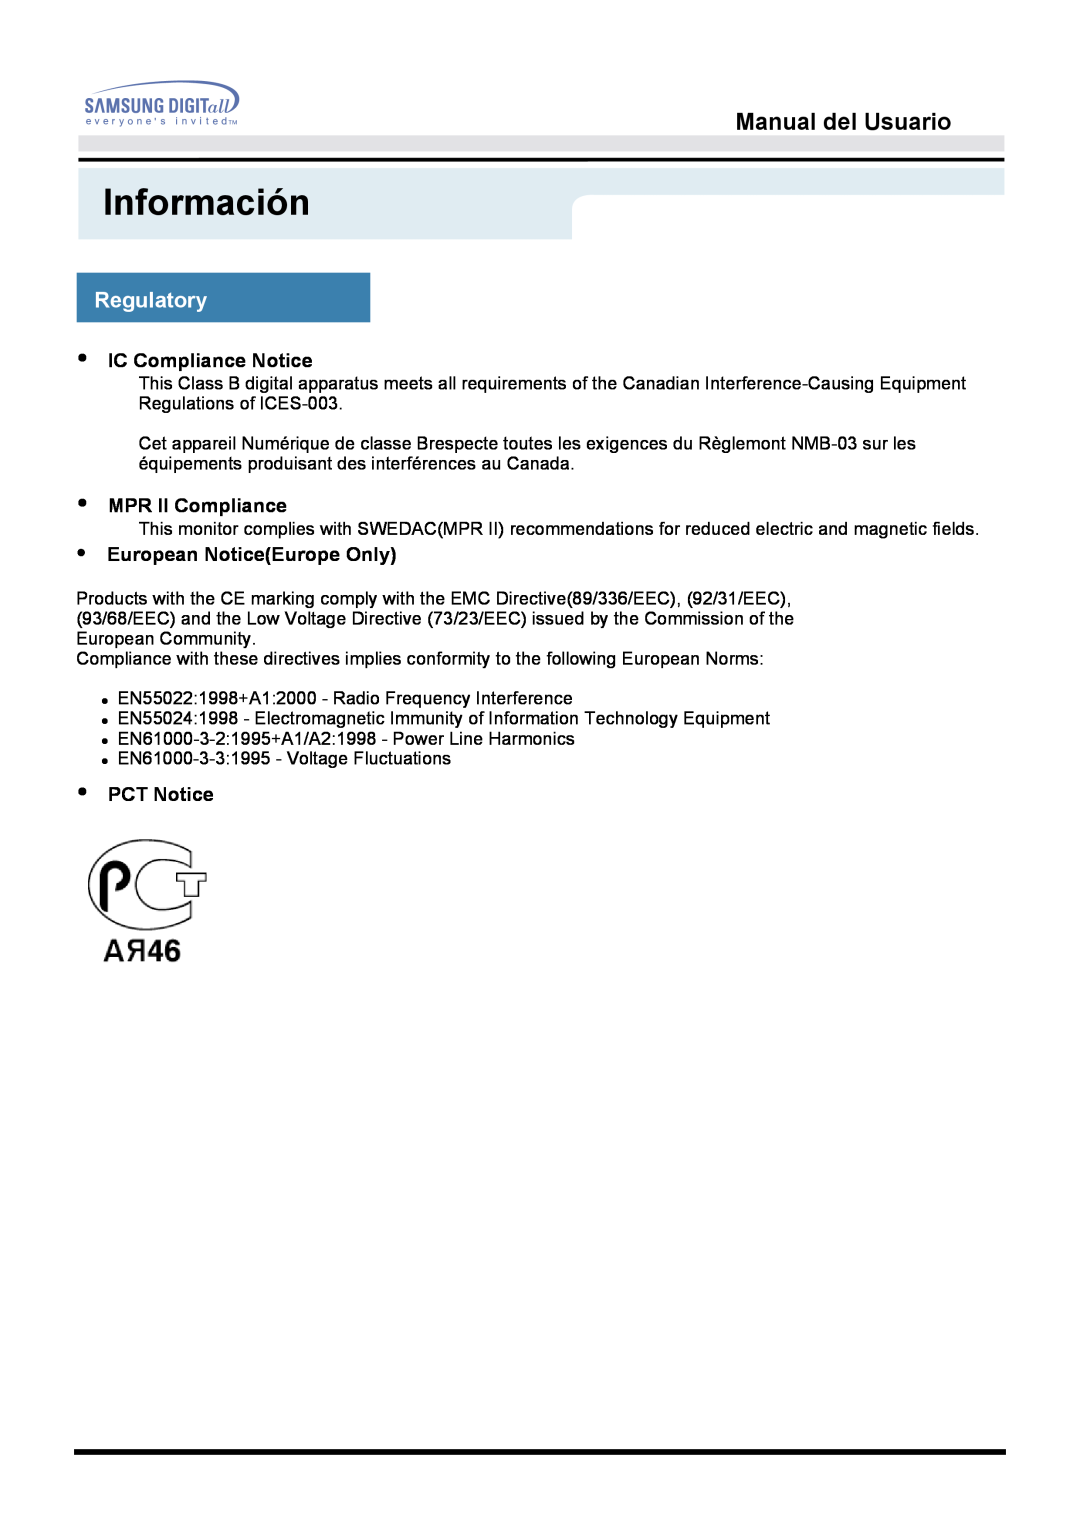 Samsung MO17PSDS/EDC Información, Manual del Usuario, Regulatory, IC Compliance Notice, MPR II Compliance, PCT Notice 